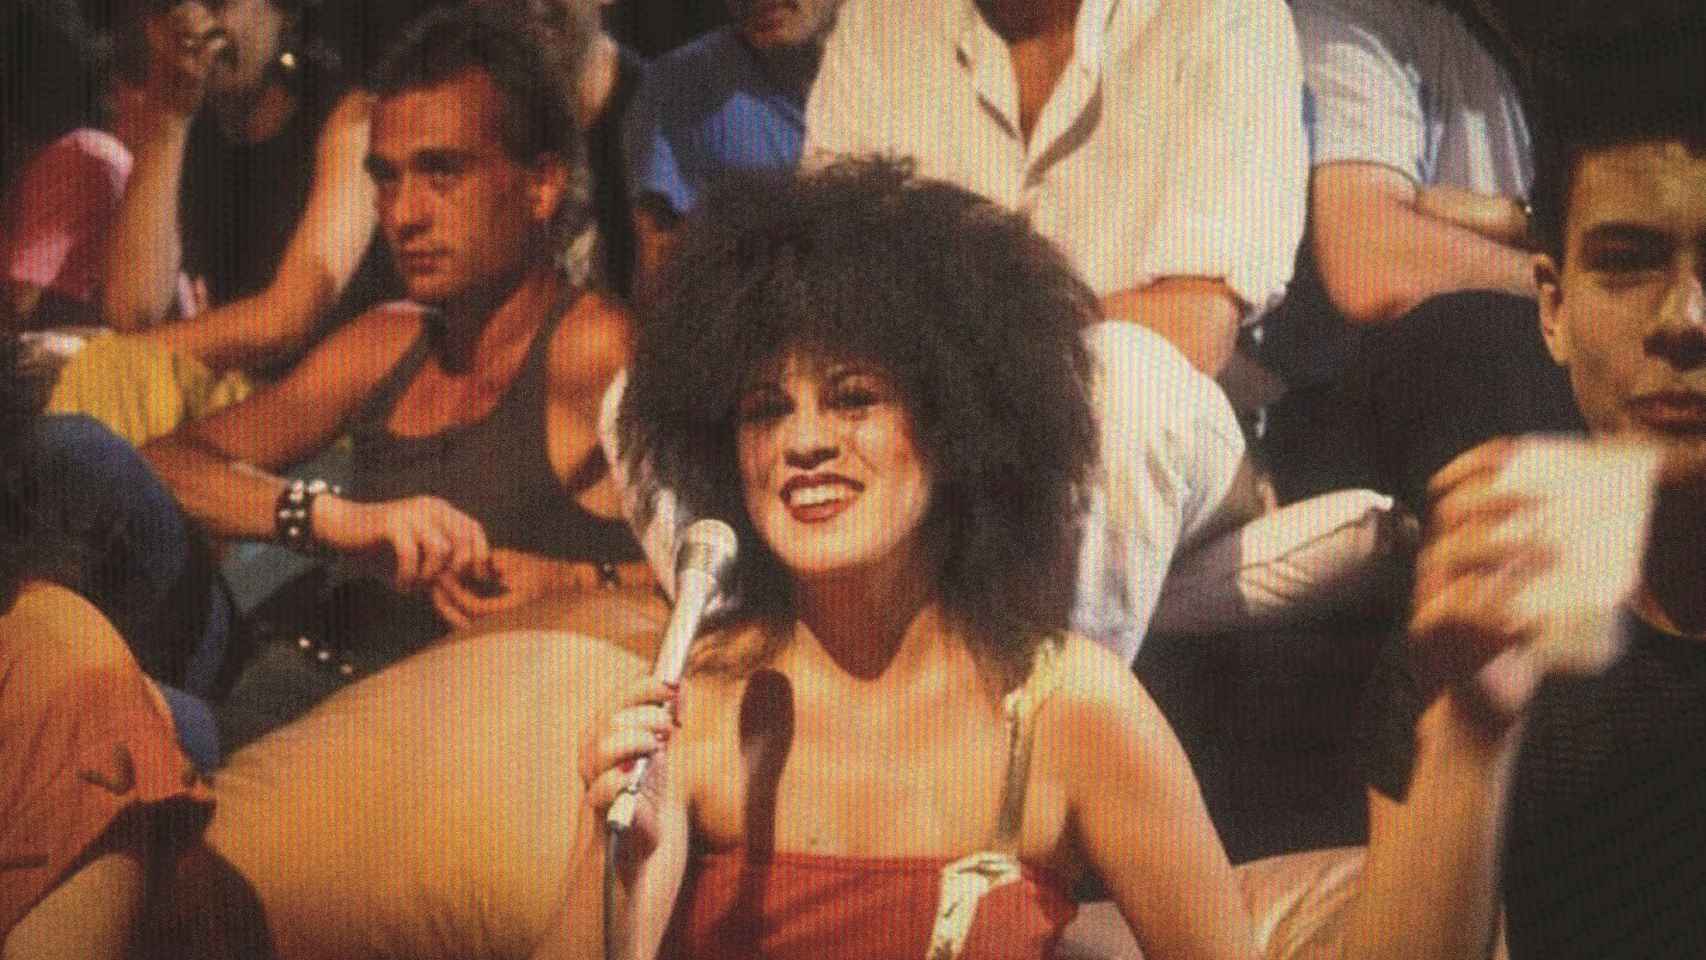 Paloma Chamorro, con su look característico, dirigió y presentó 'La edad de oro' (1983-1985) en directo siempre rodeada de público